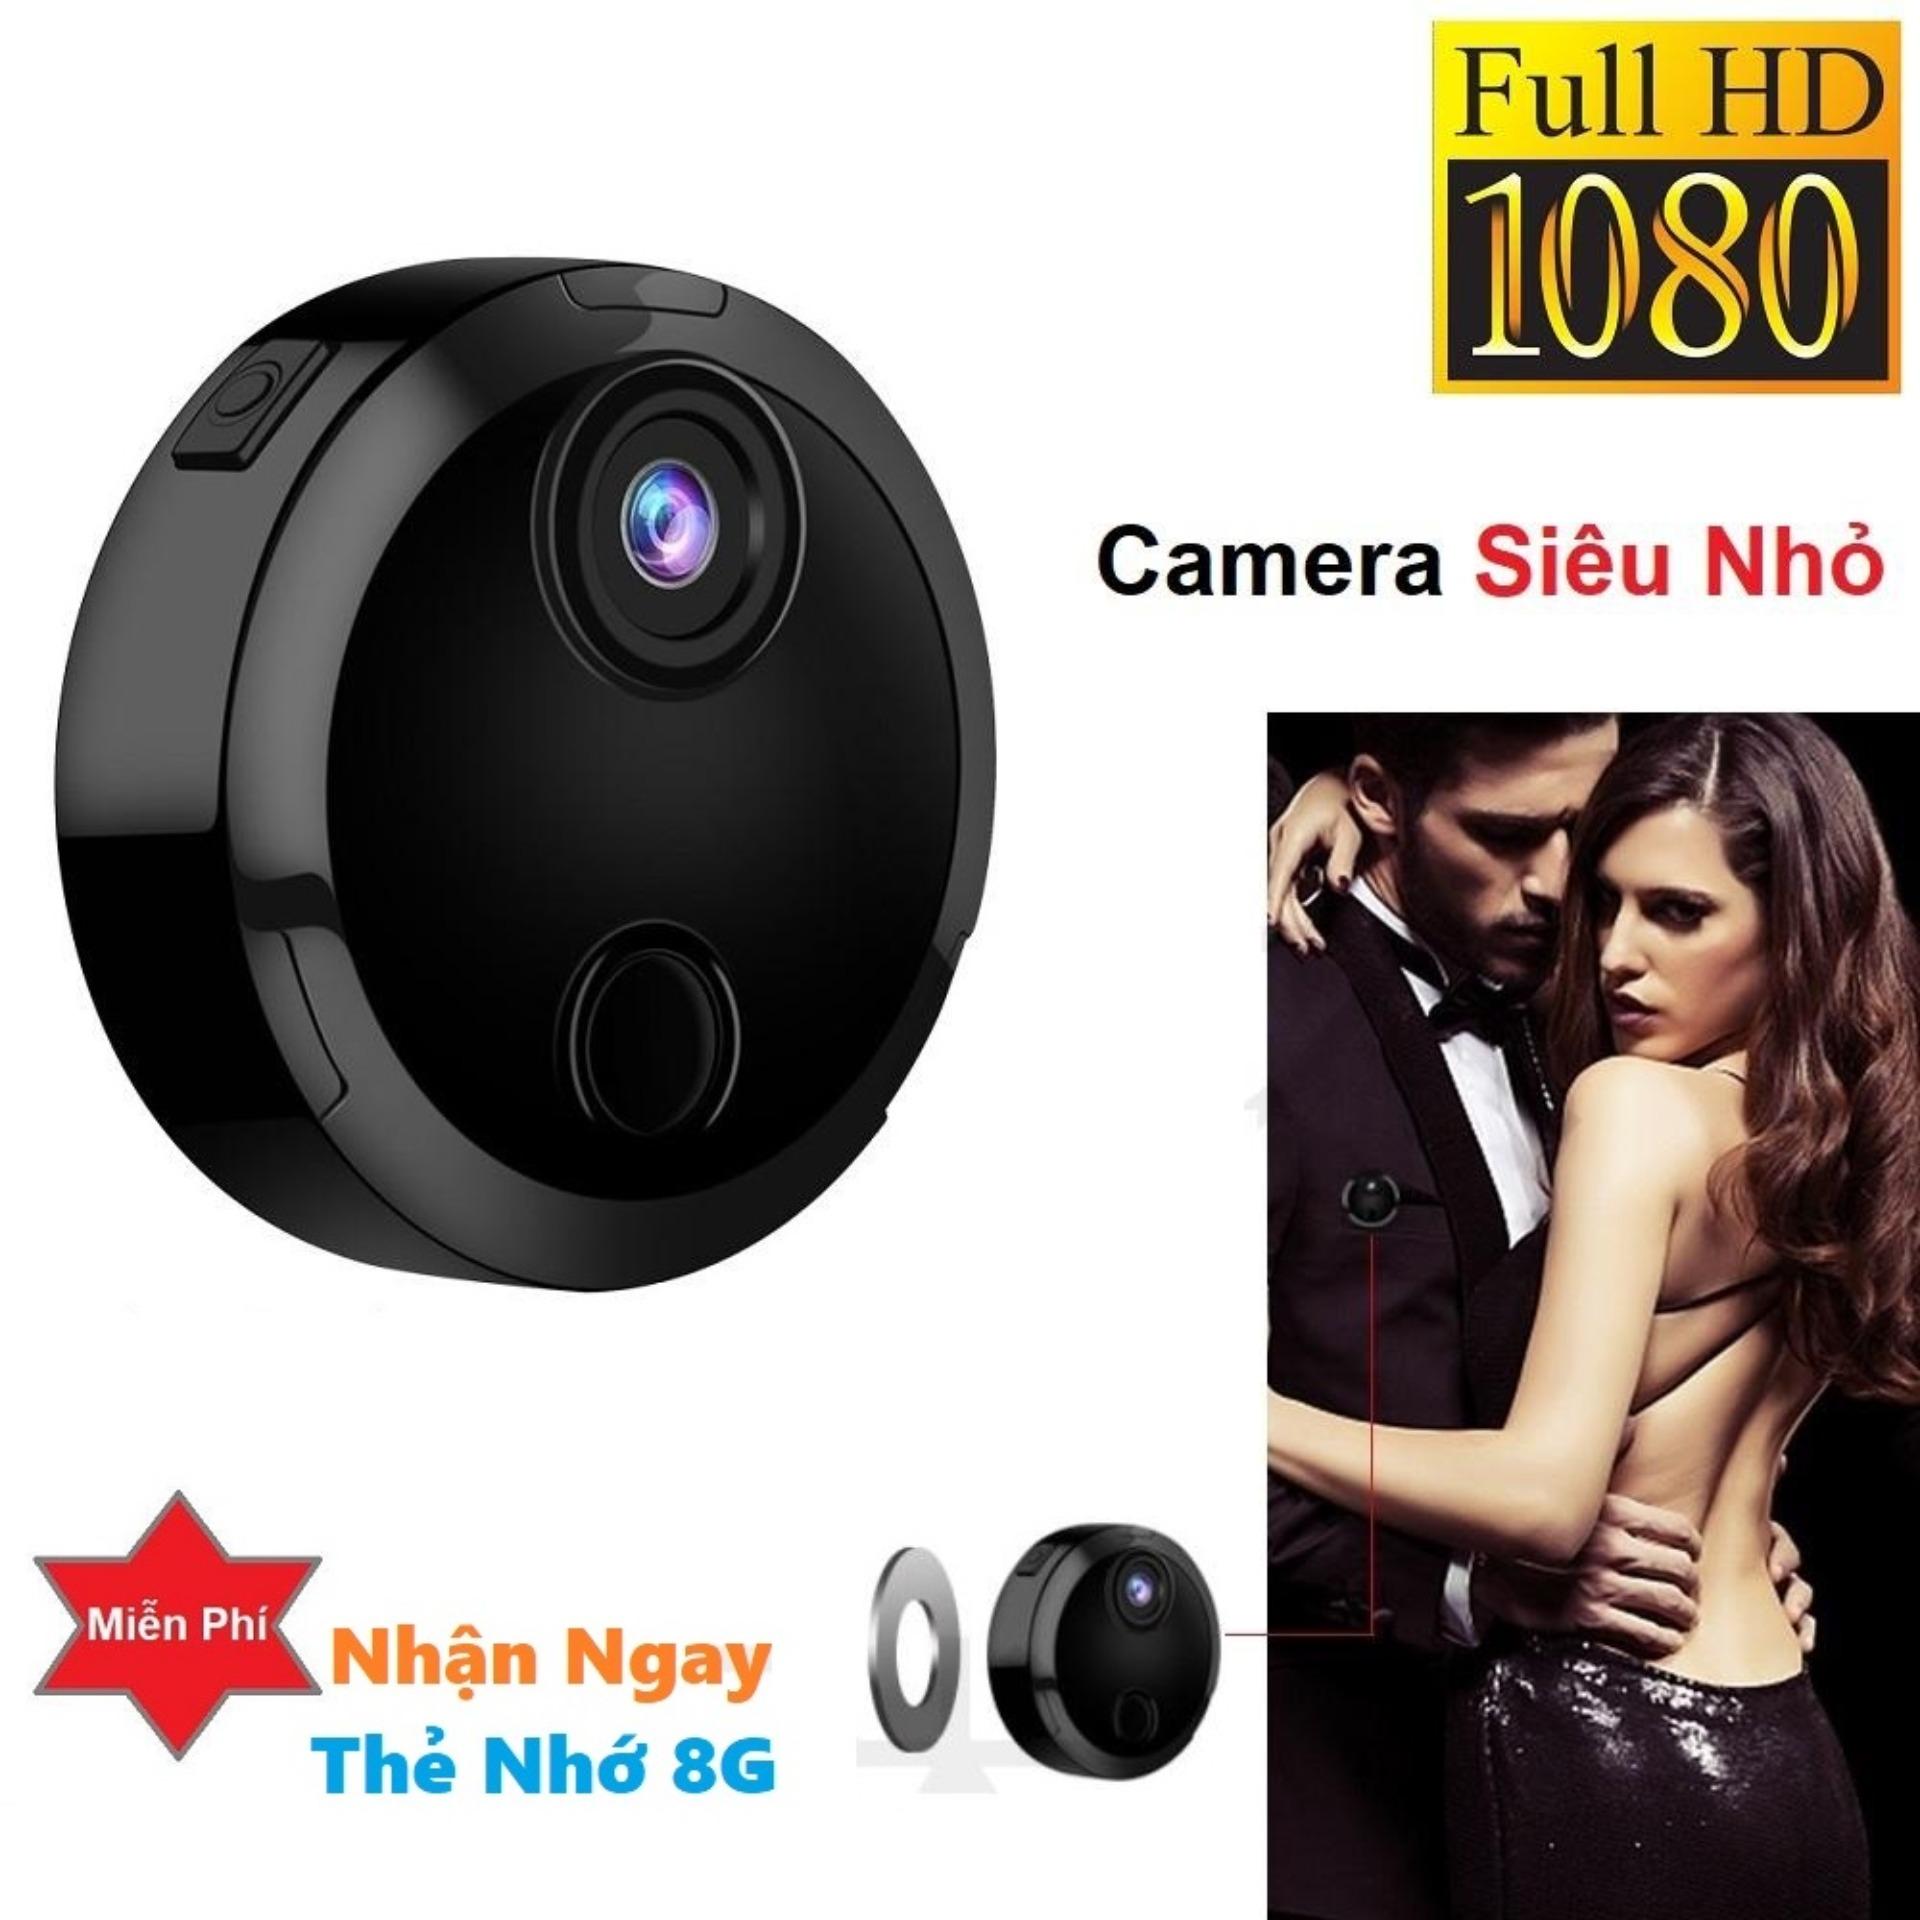 Camera siêu nhỏ thế hệ mới Full HD - Camera Mini Q15 Full HD 1080P cực nhỏ gọn